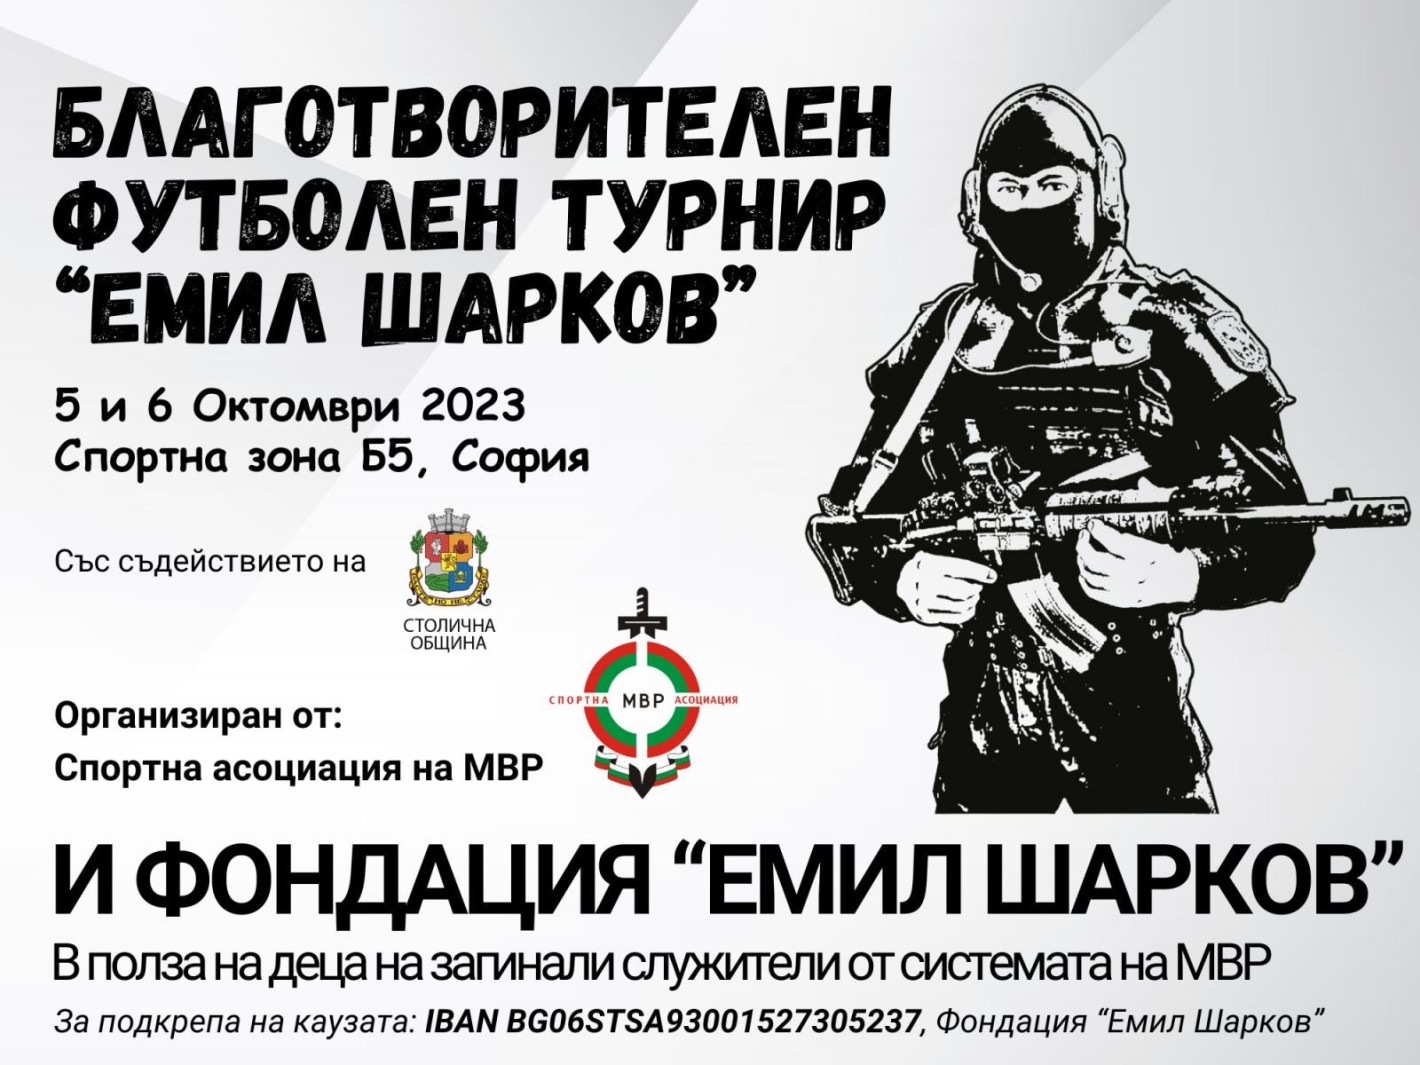 Полицаи ще играят футбол “ЗА ДЕЦАТА НА ГЕРОИТЕ” в благотворителния турнир „ЕМИЛ ШАРКОВ“